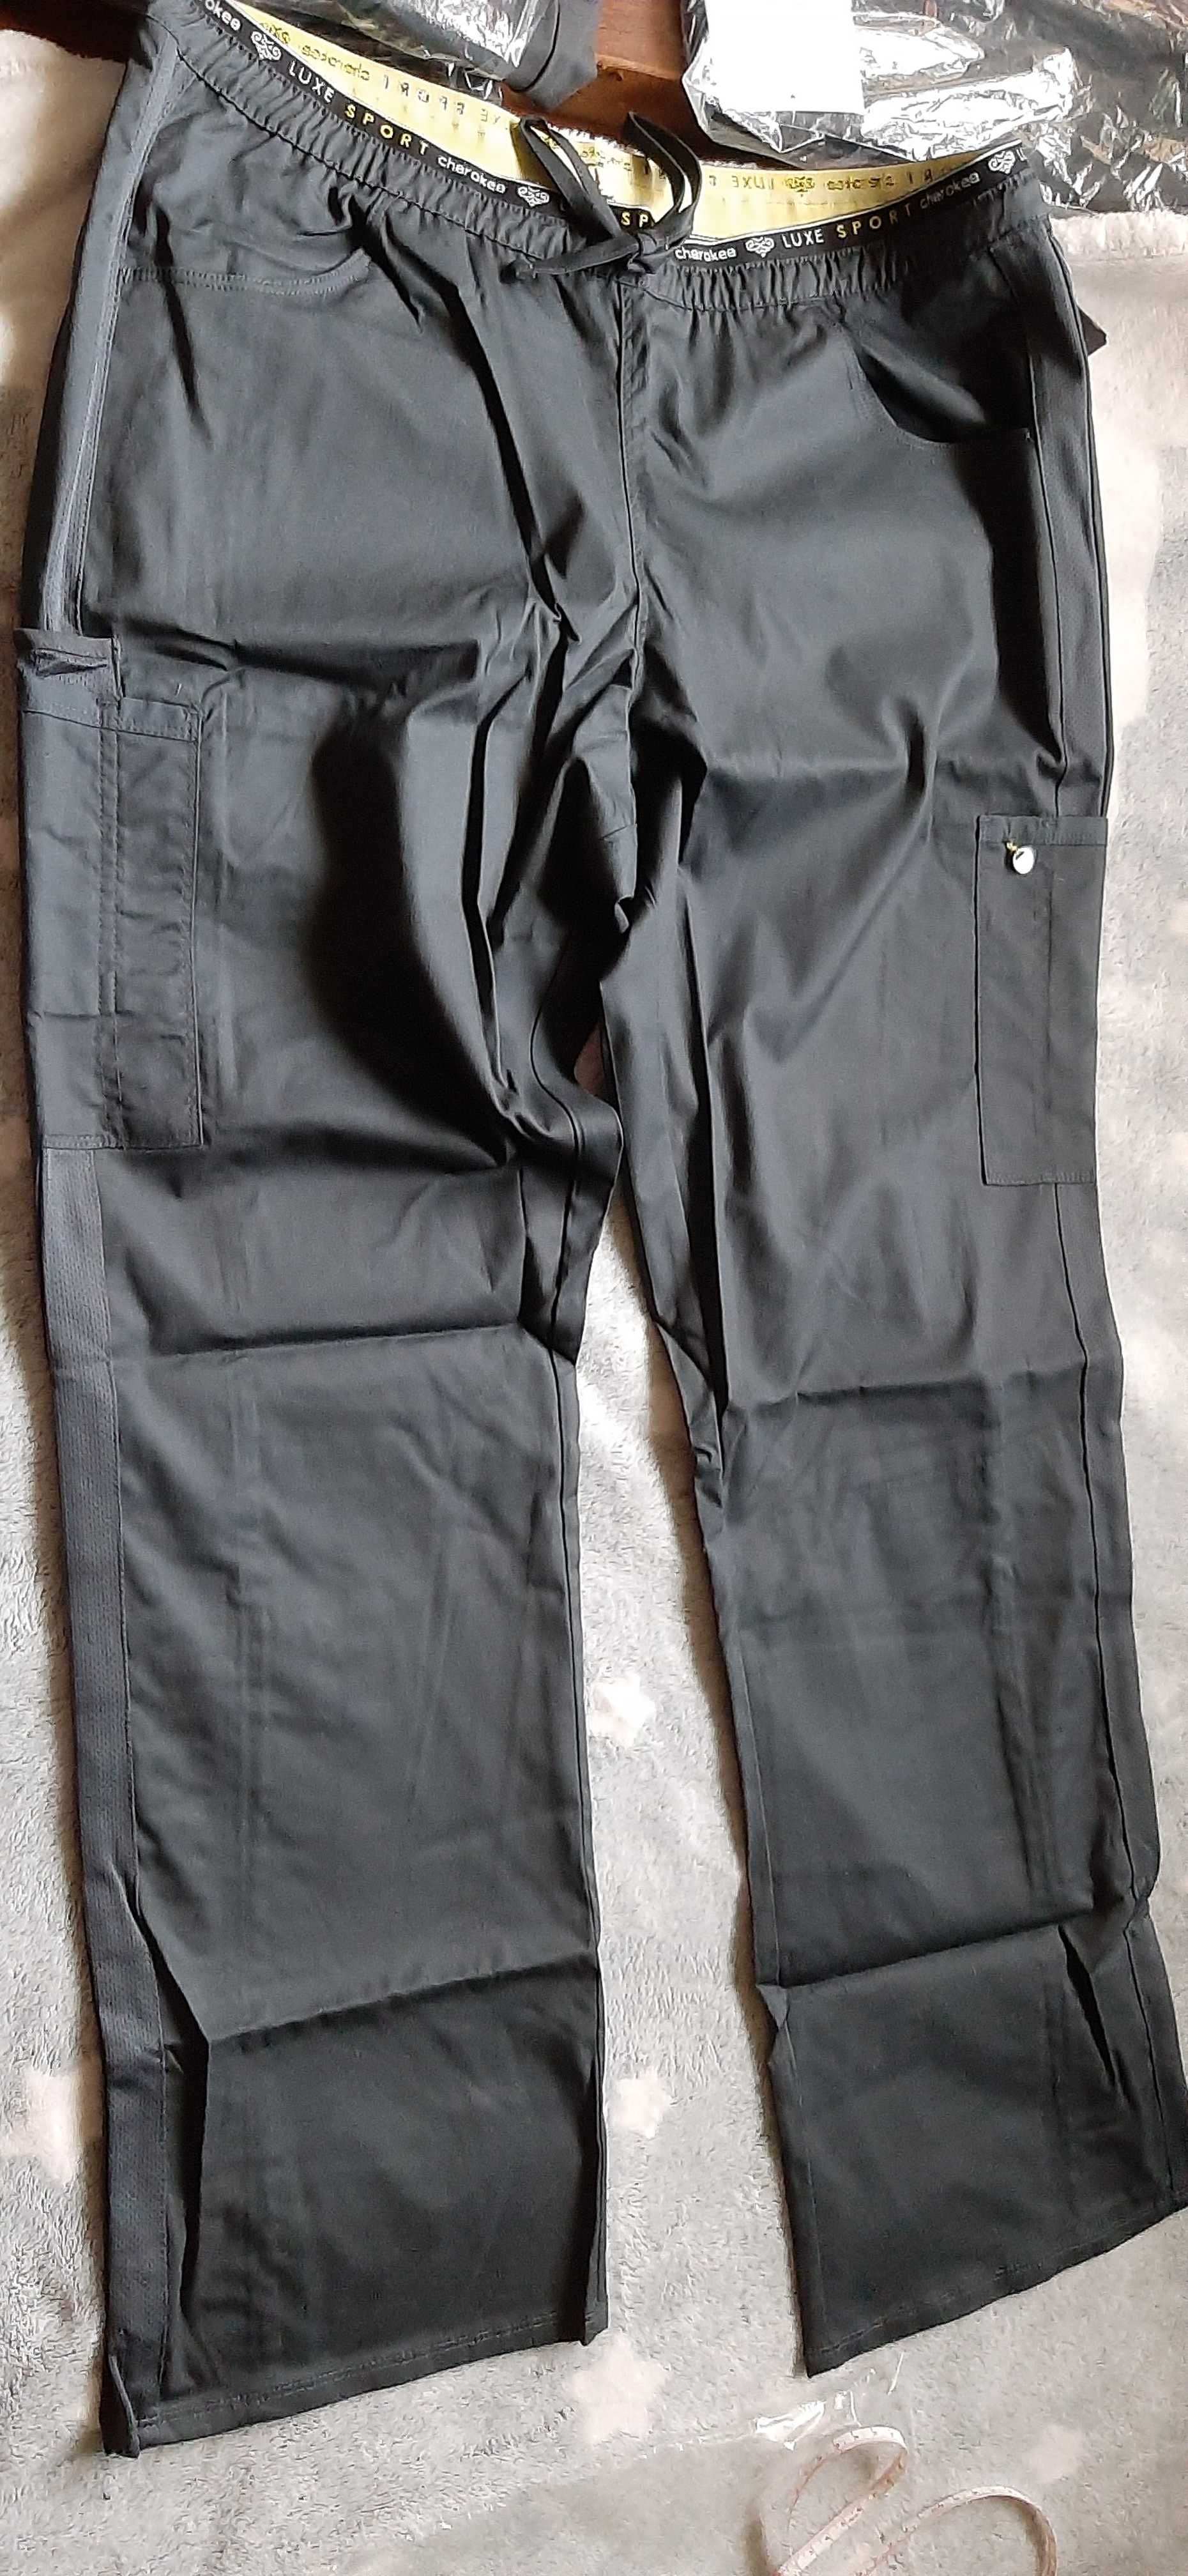 Cherokee z USA porządne spodnie najwyższa jakość wartość 192 zł okazja